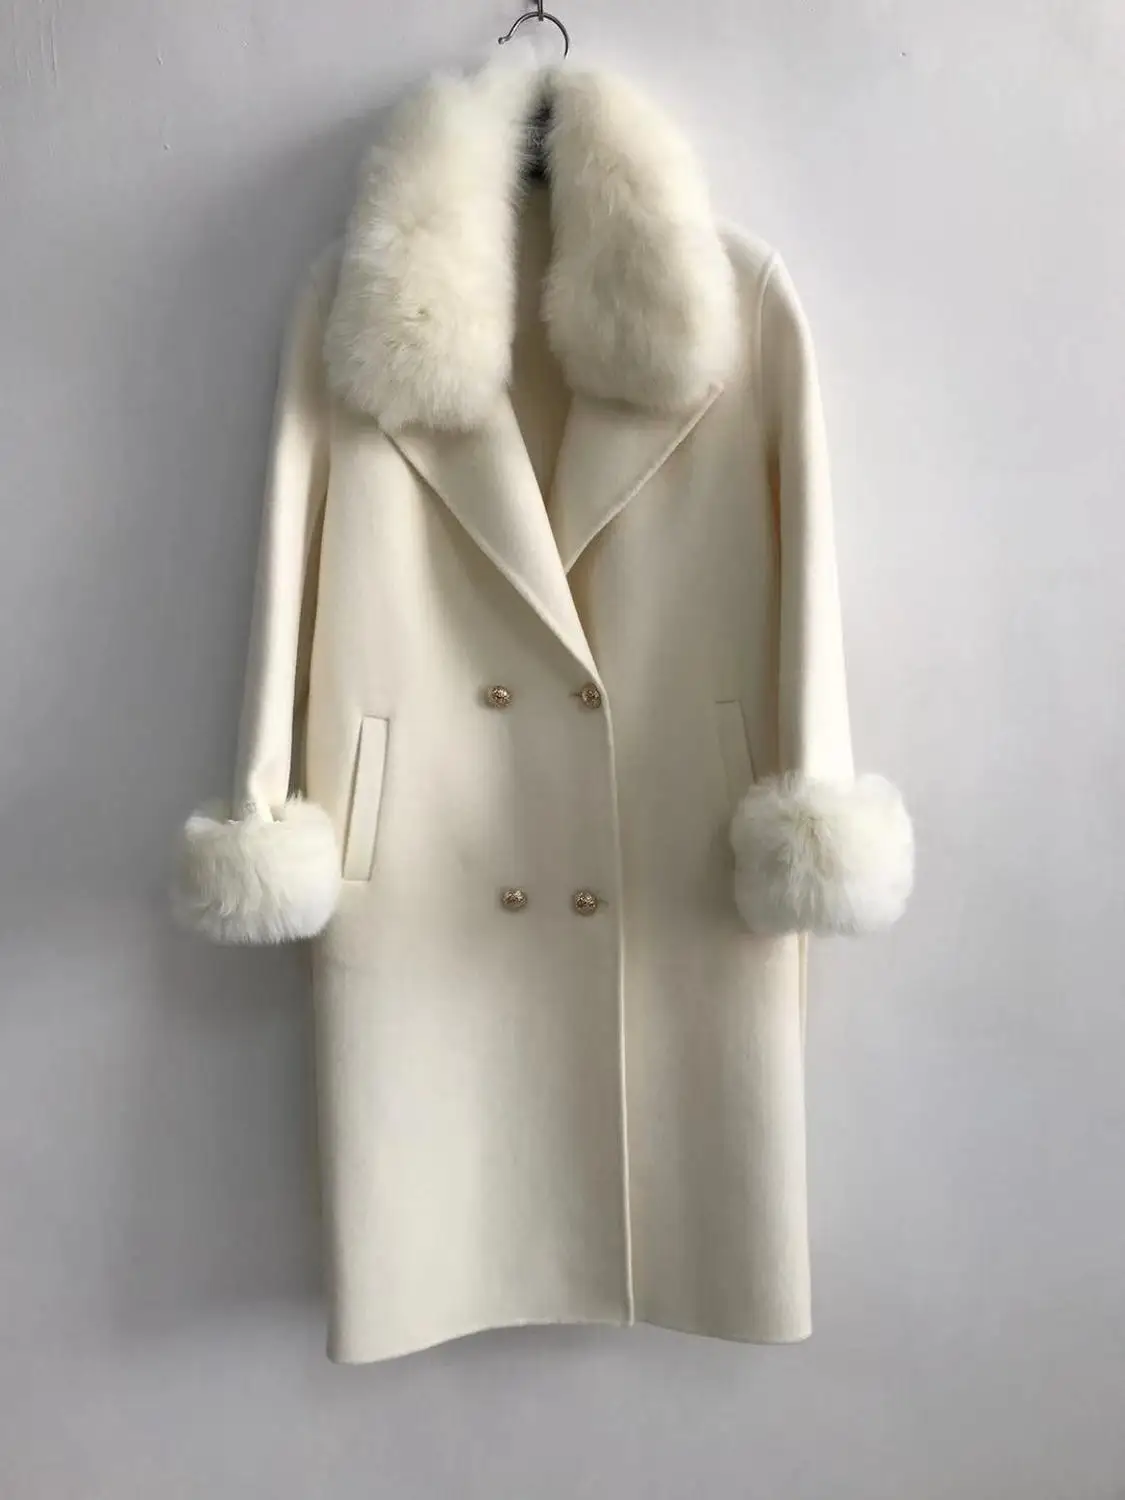 QIUCHEN PJ19100 Новое поступление Высококачественная кашемировая Женская куртка с воротником из натурального Лисьего меха и манжетами модная модель